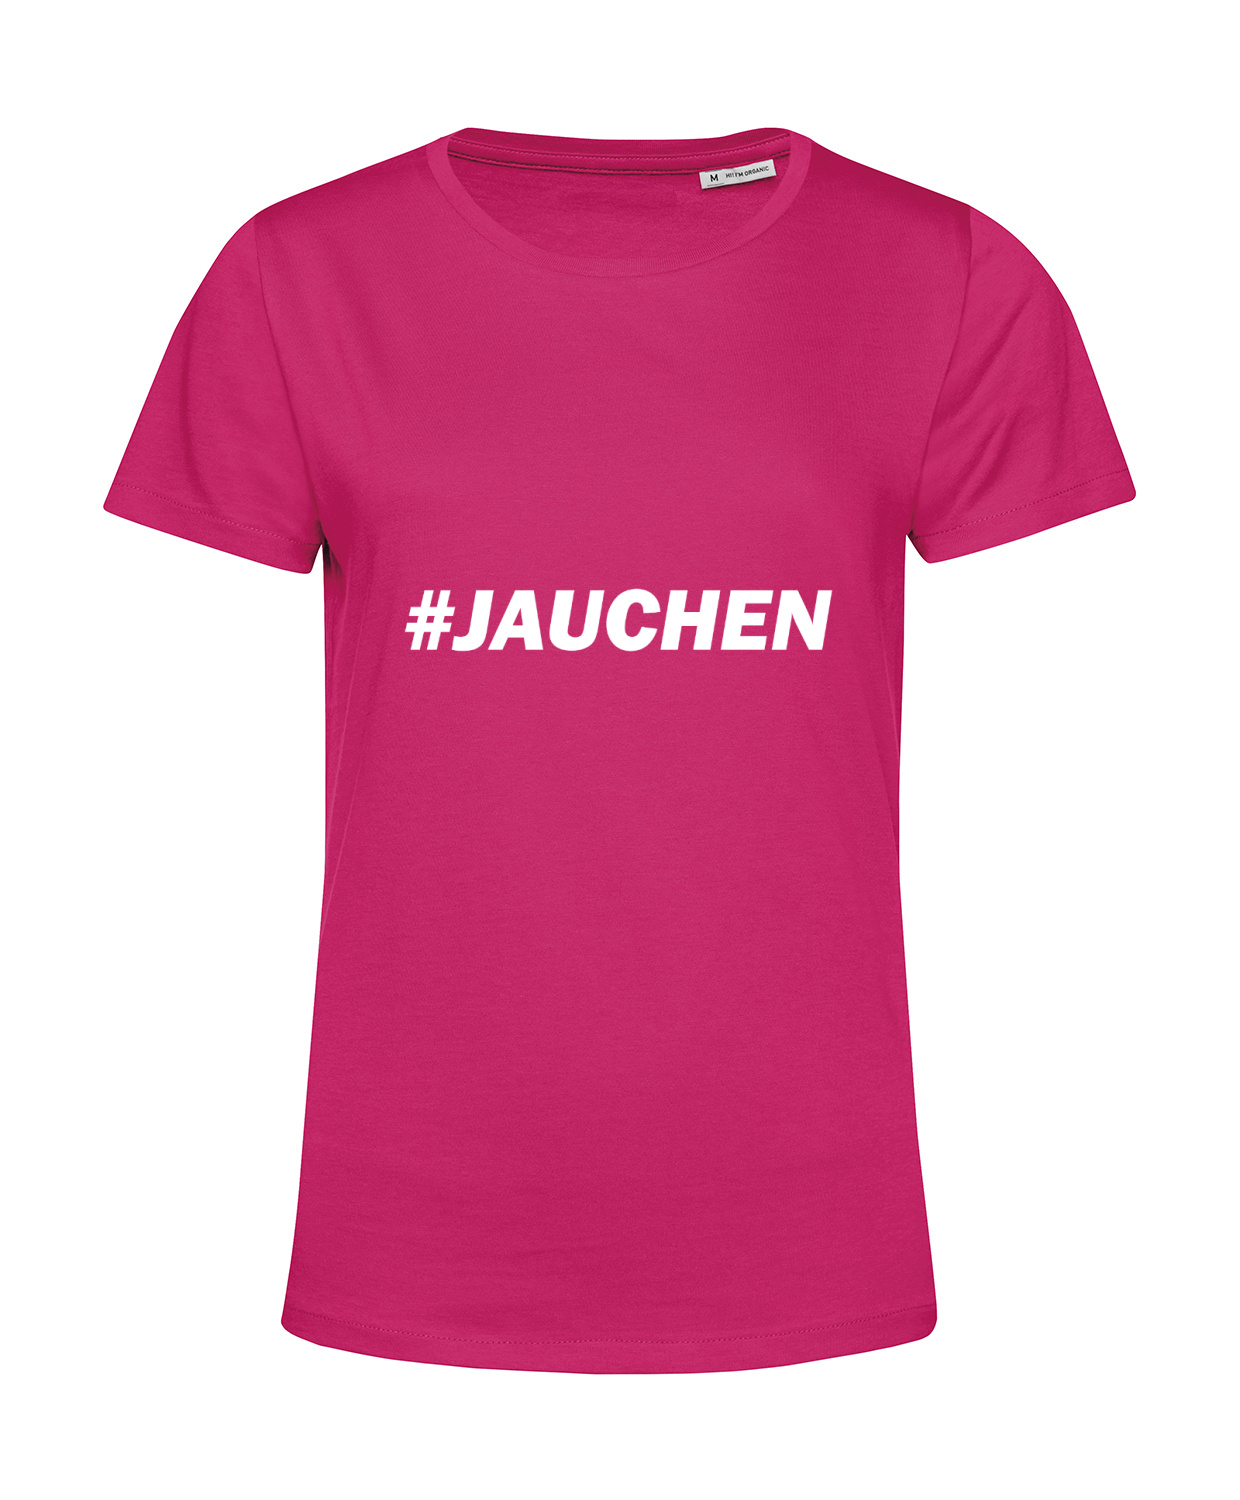 Nachhaltiges T-Shirt Damen Jauchen - Landwirt